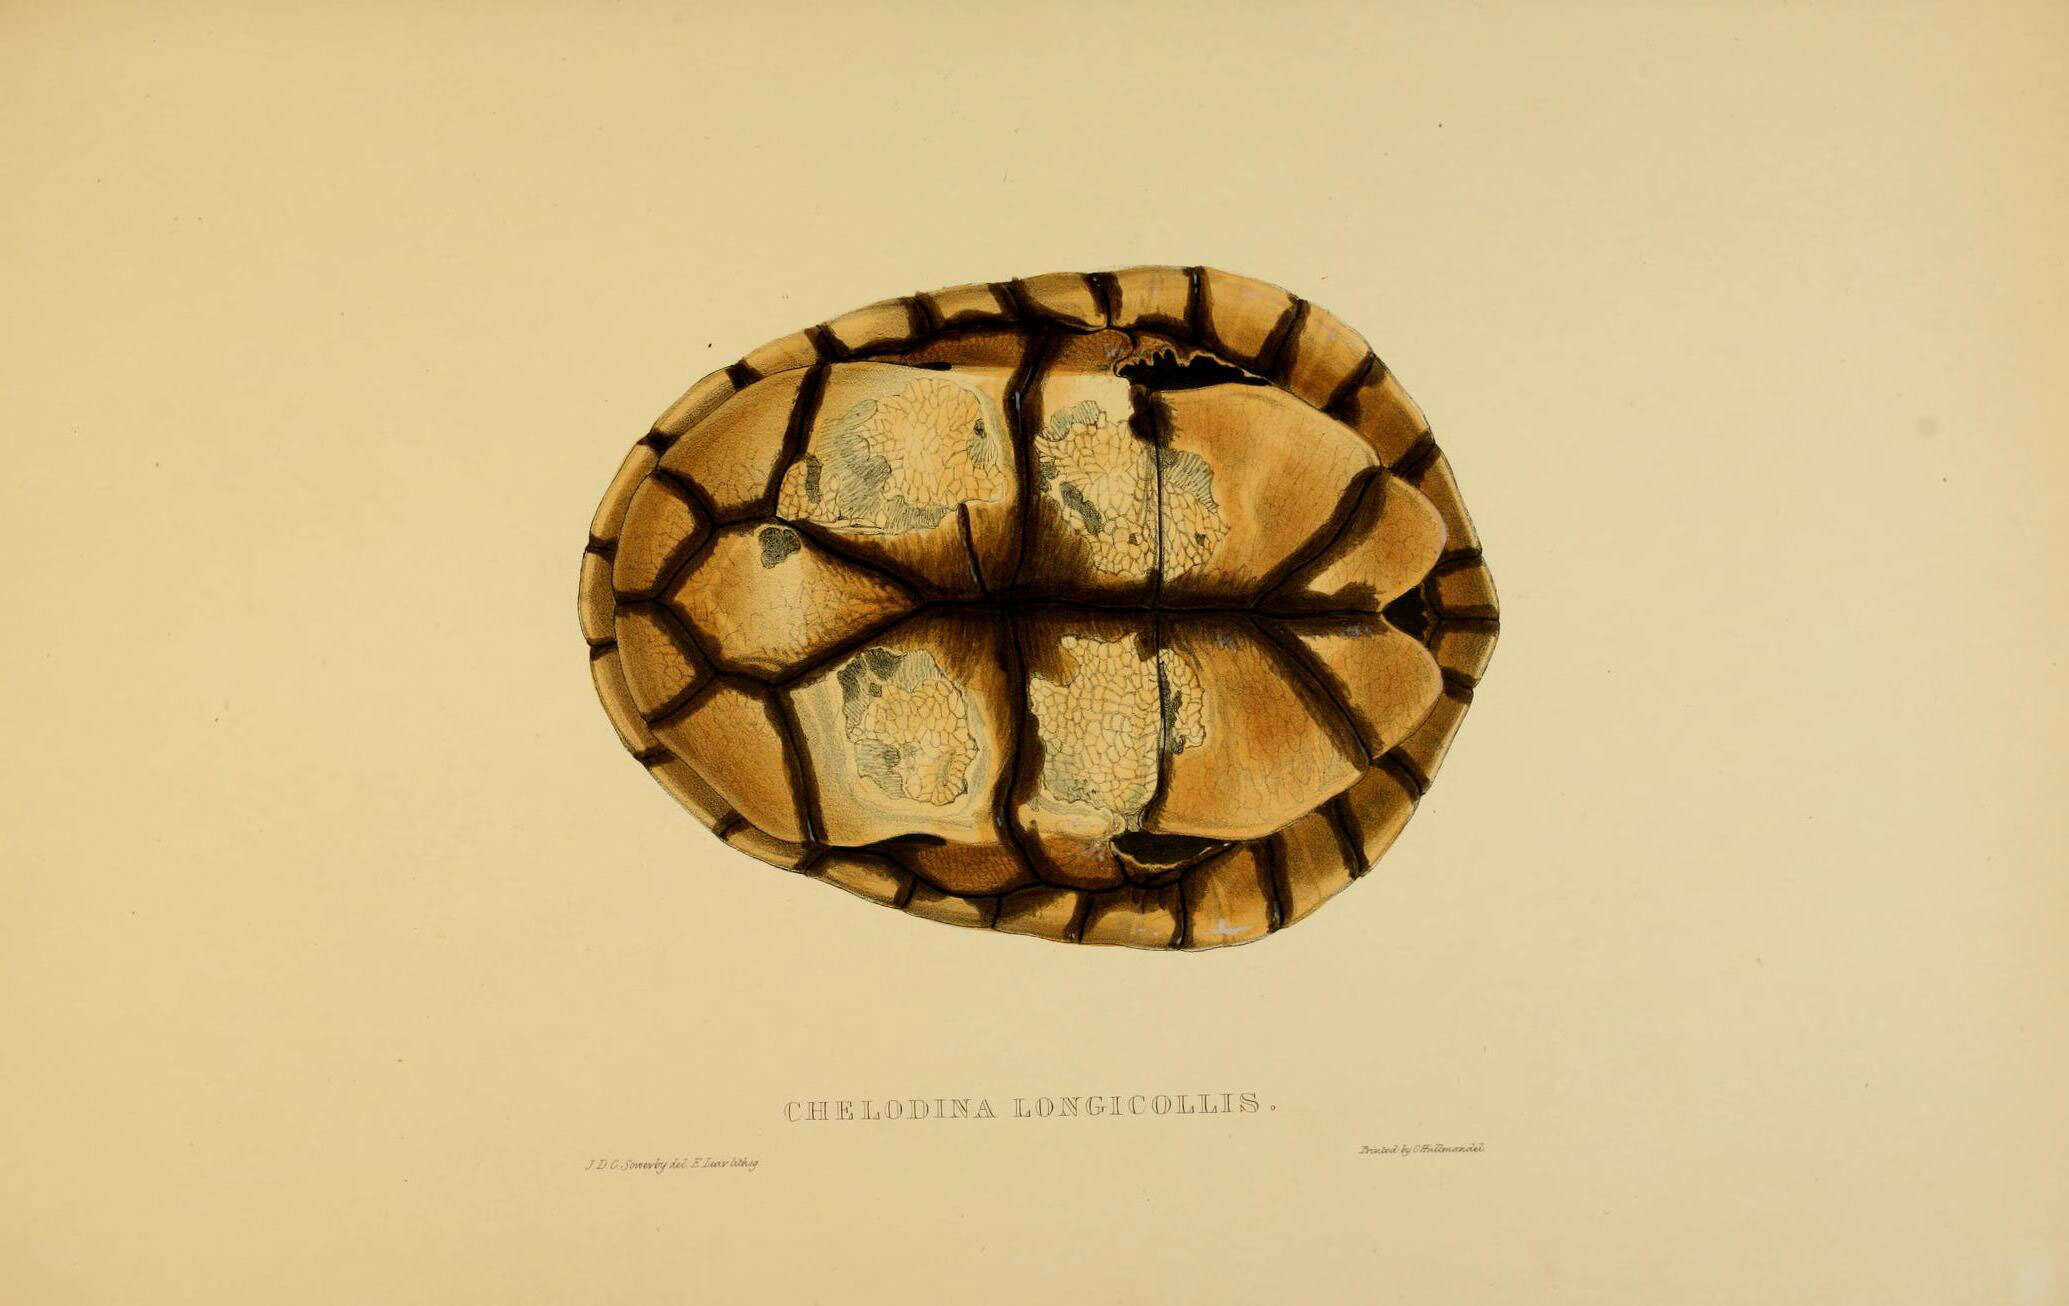 Image of Siebenrock’s Snake-necked Turtle; oblonga